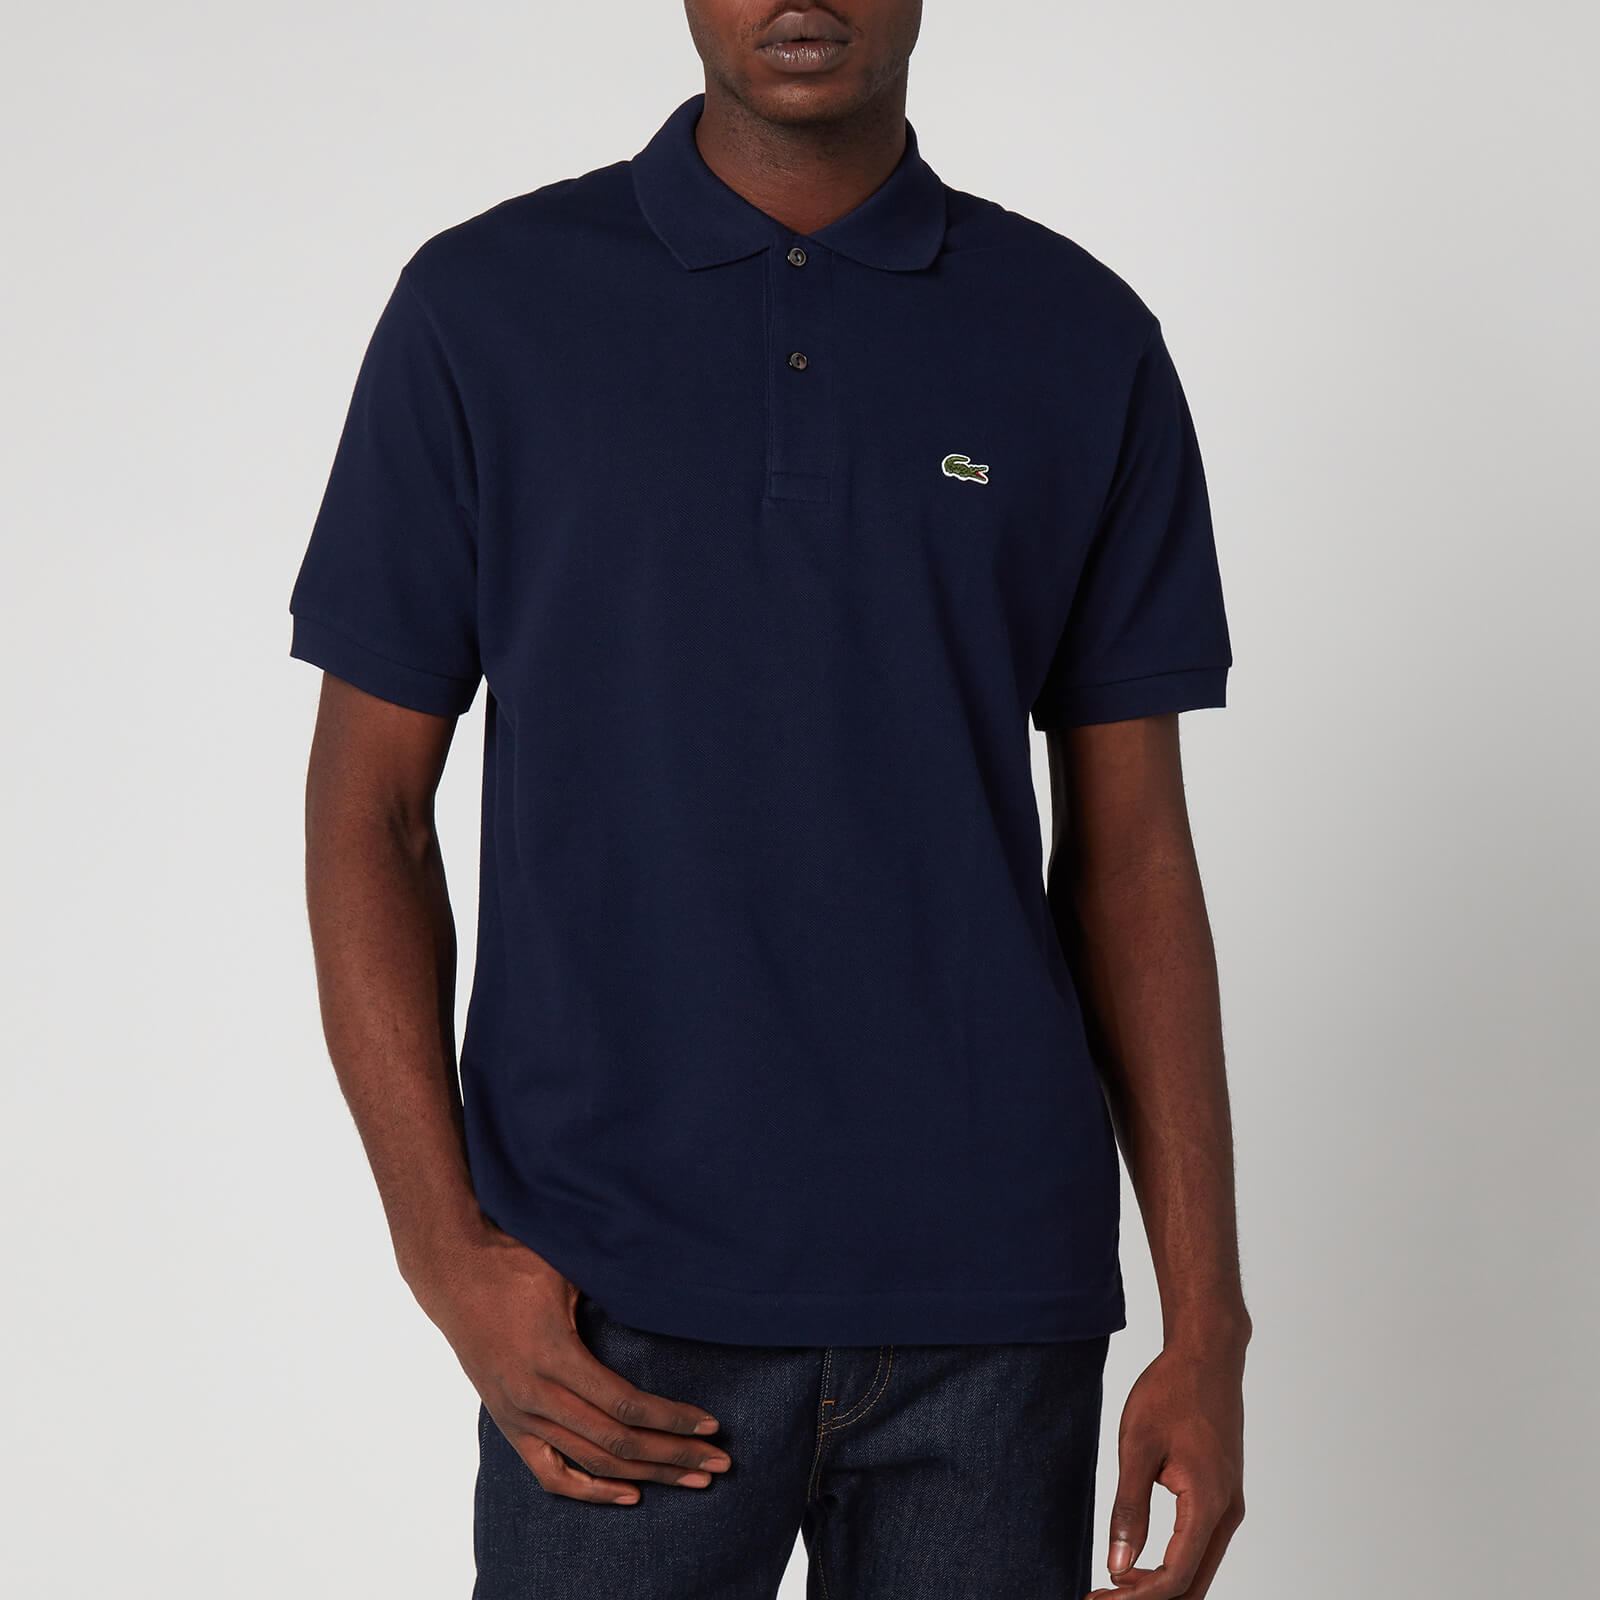 Lacoste Men's Classic Fit Pique Polo Shirt - Navy Blue - 5/L